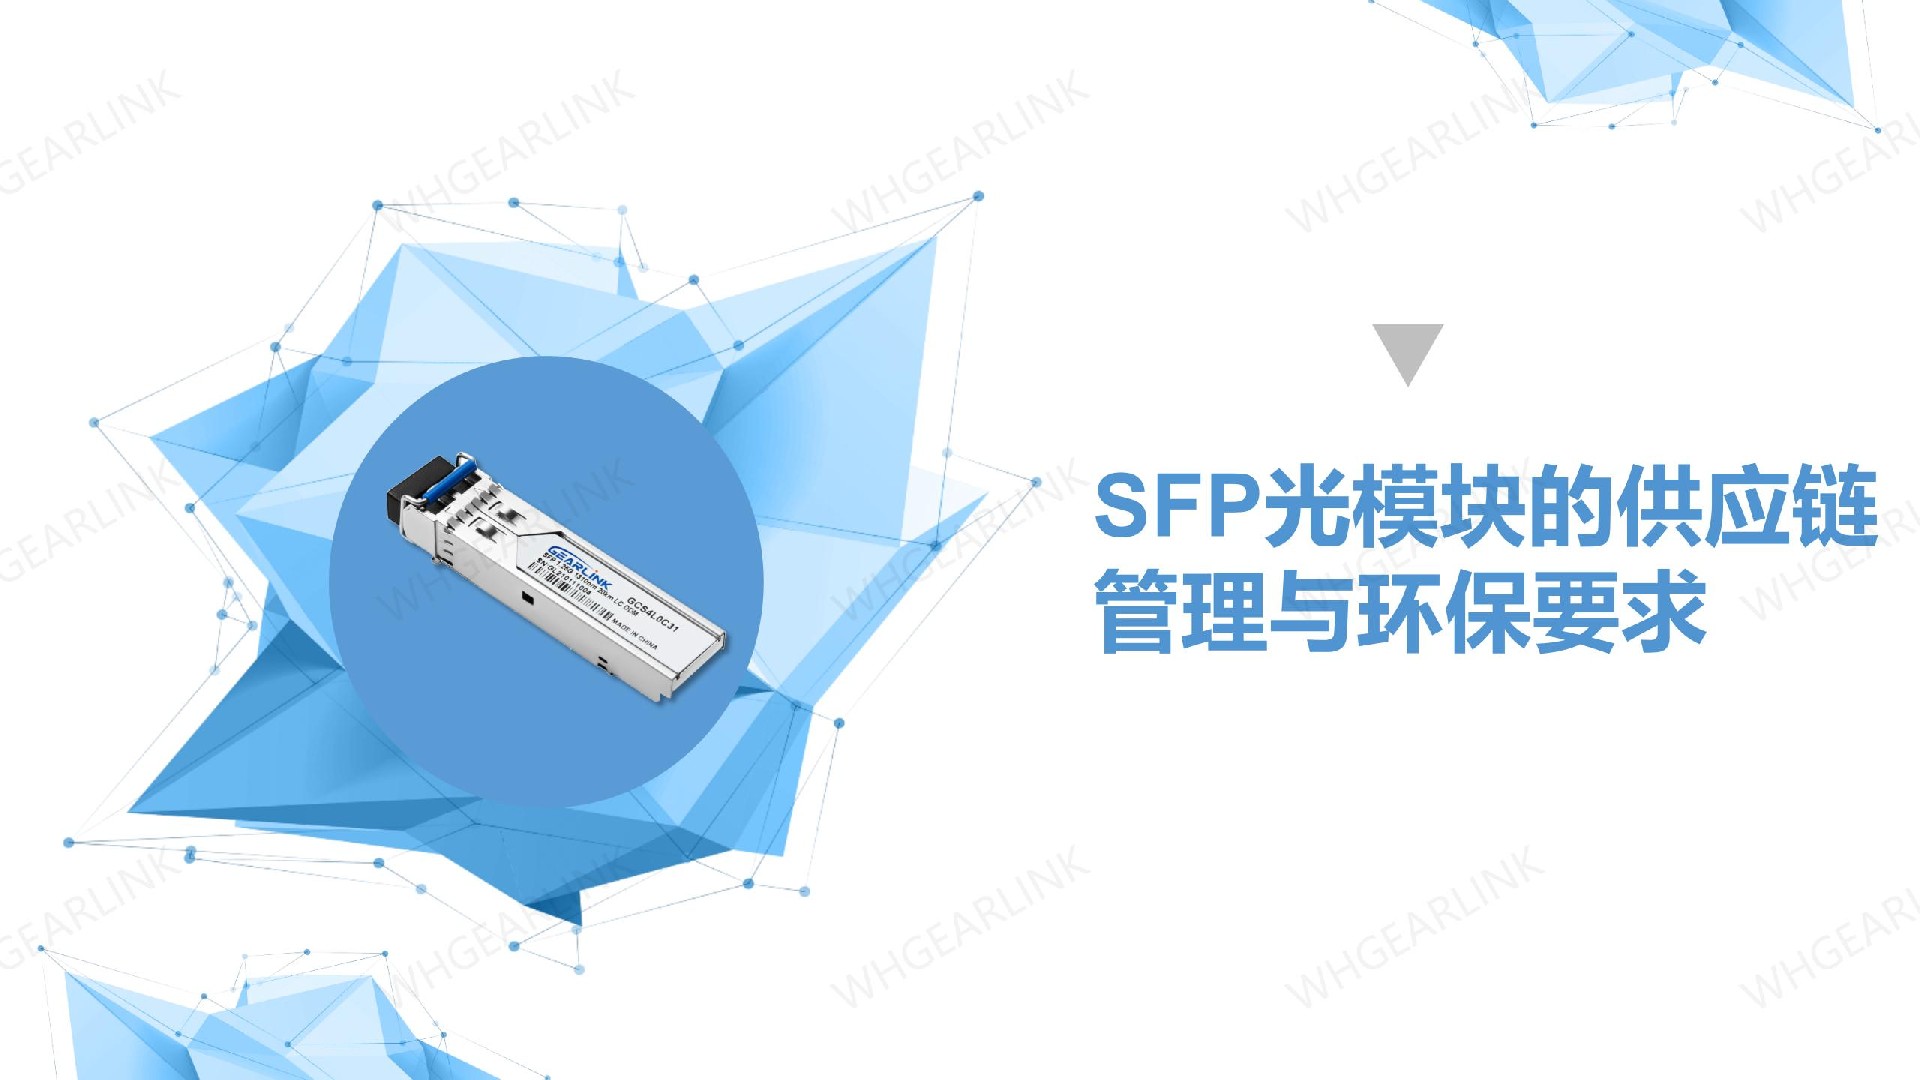 SFP光模块的供应链管理与环保要求